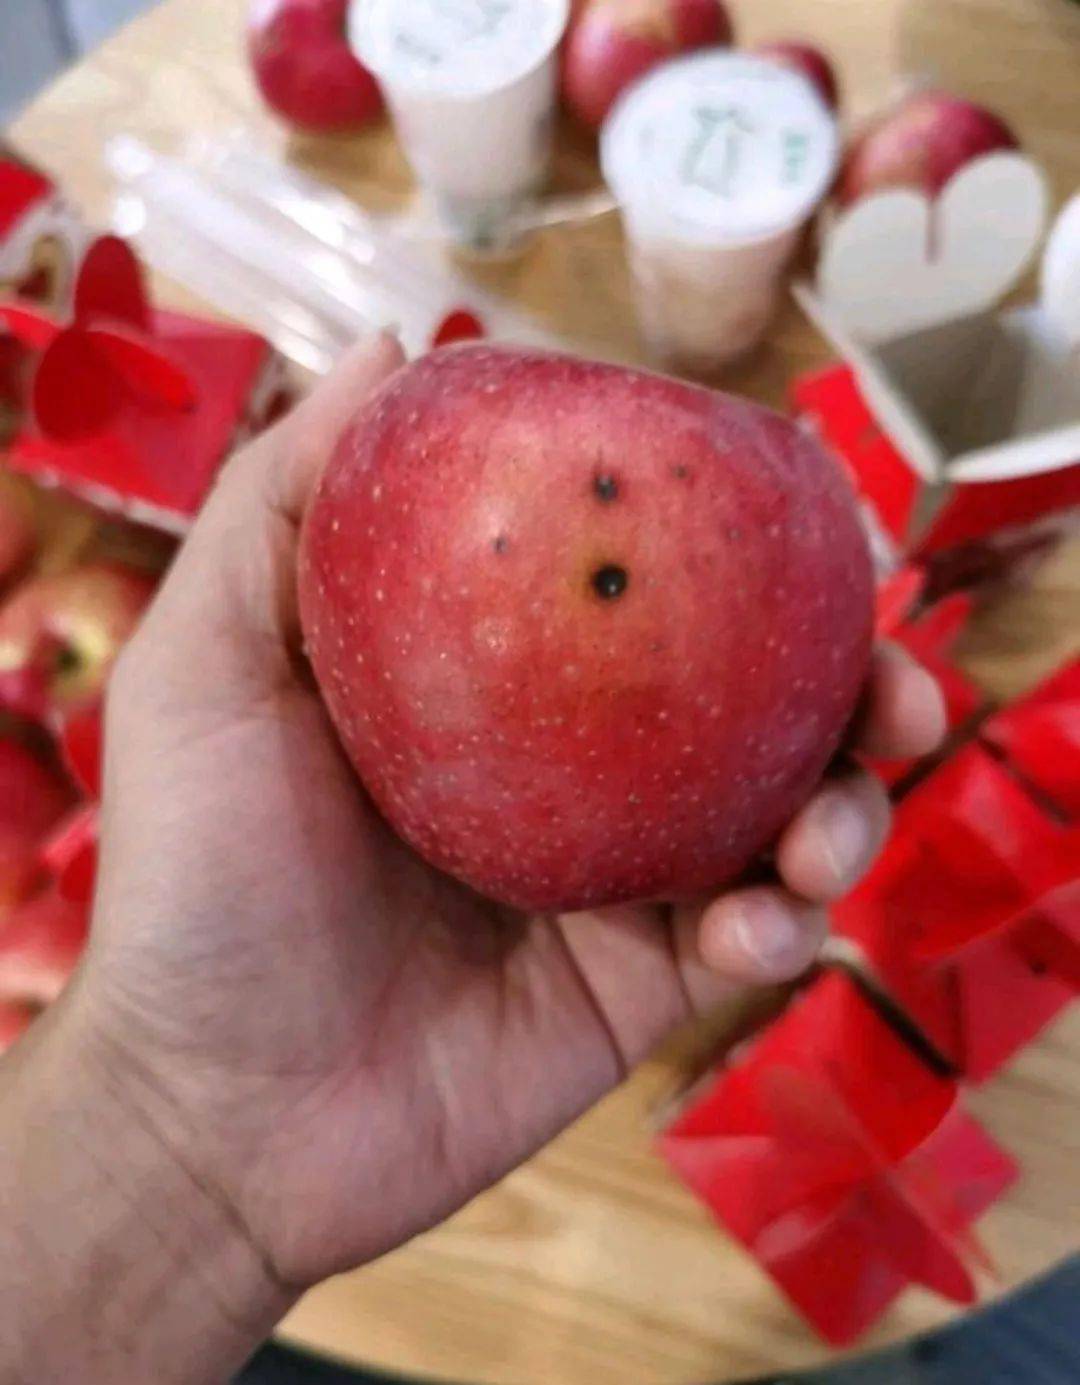 烂 苹 果发霉苹果更让街坊难以接受的是,该水果商贩的态度,并没有一